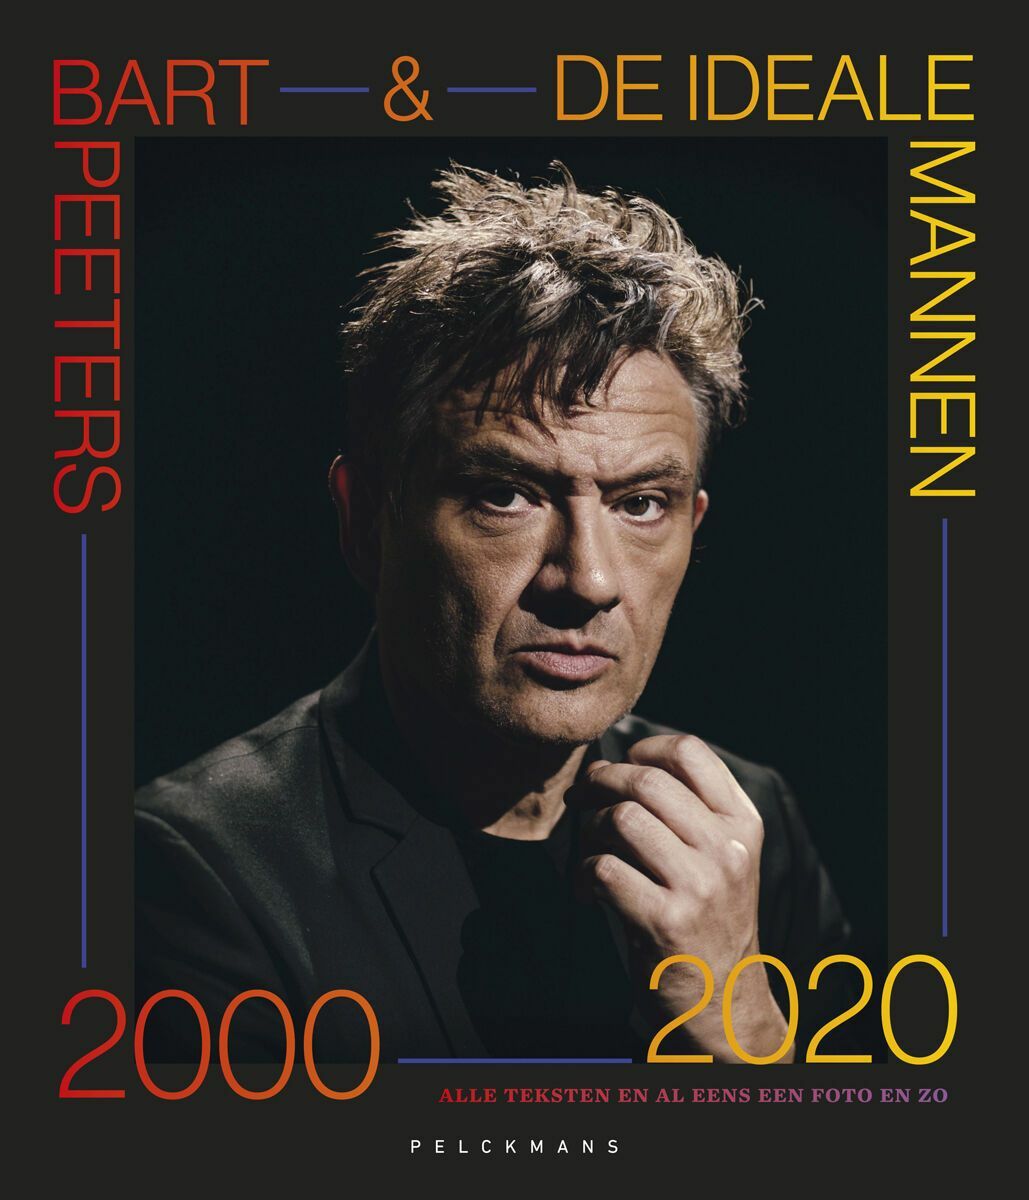 Bart Peeters & De Ideale Mannen 2000-2020